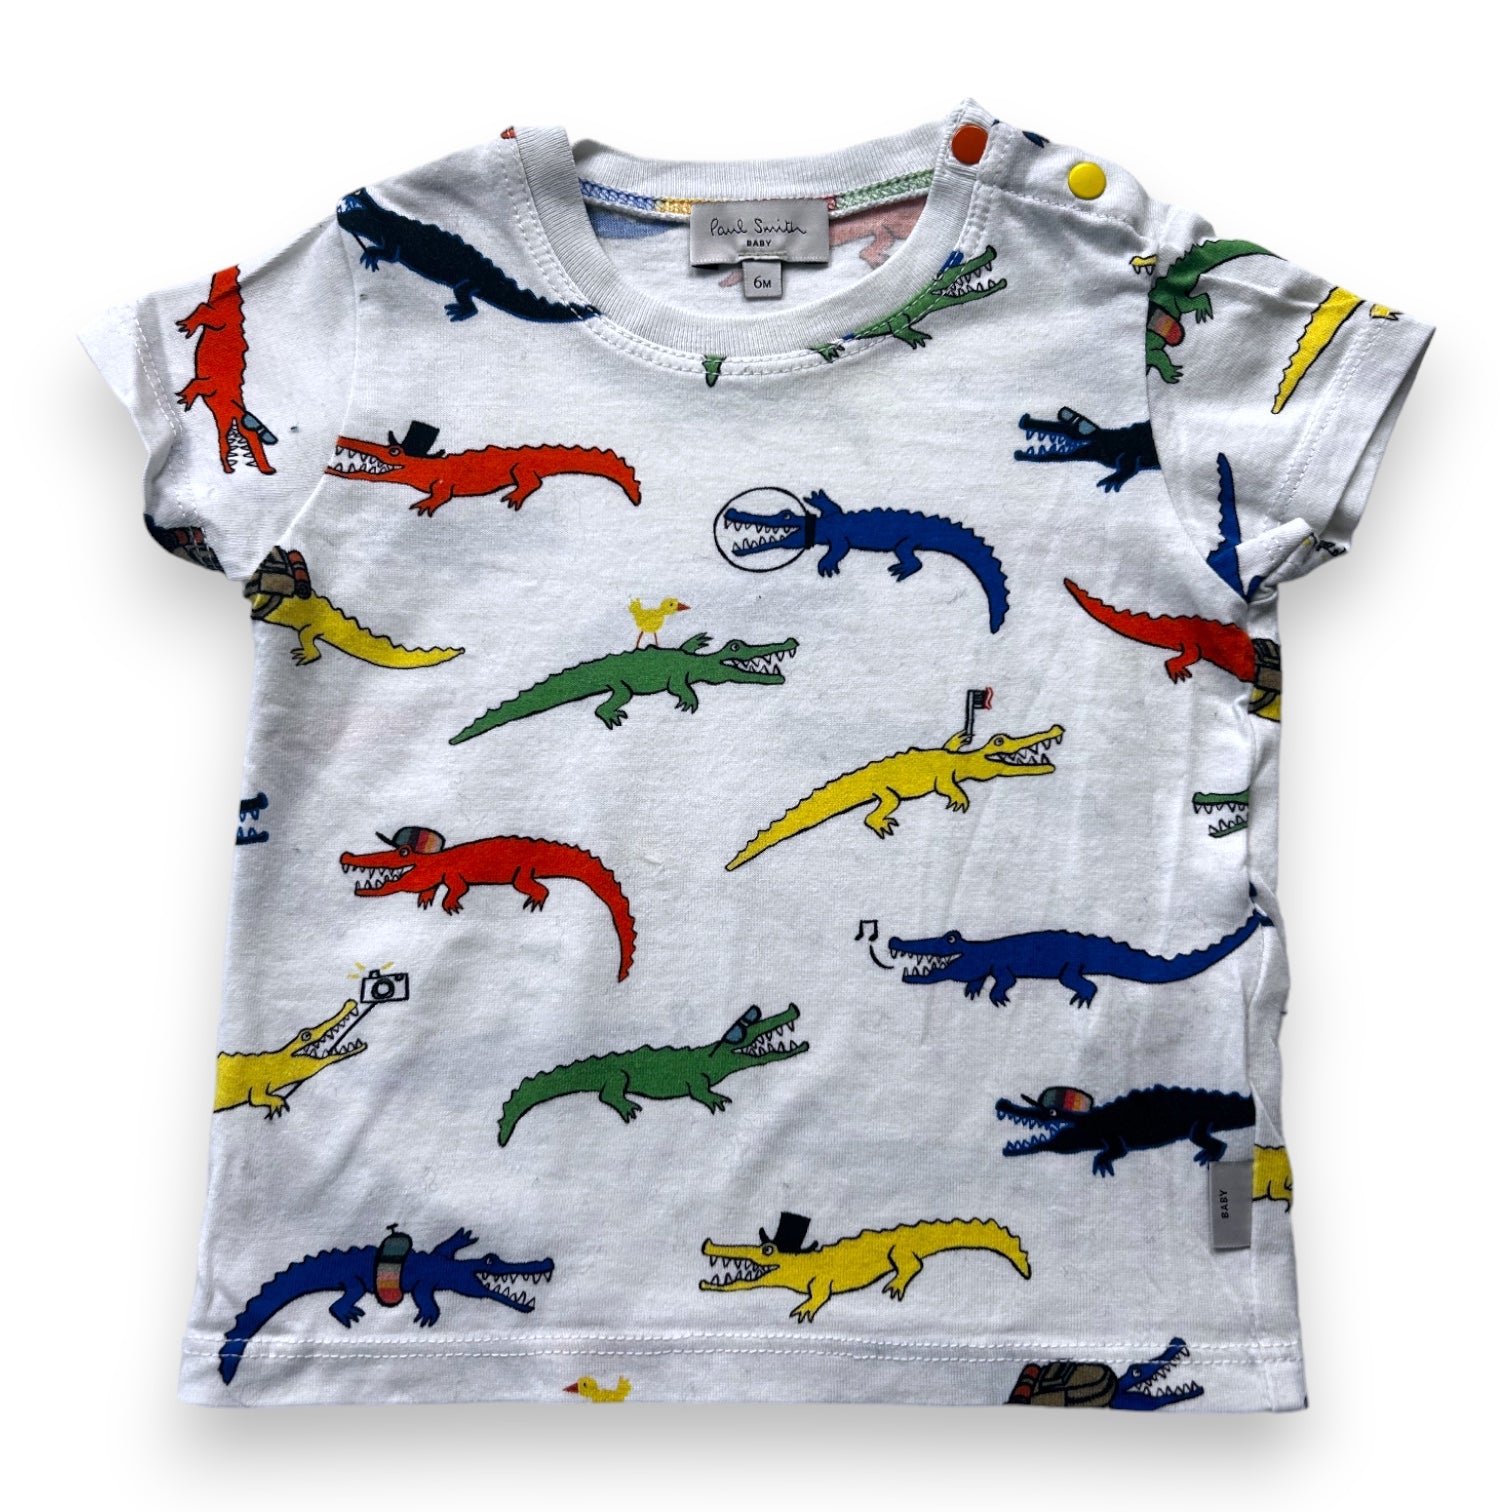 PAUL SMITH - t-shirt blanc imprimé dinosaure - 6 mois